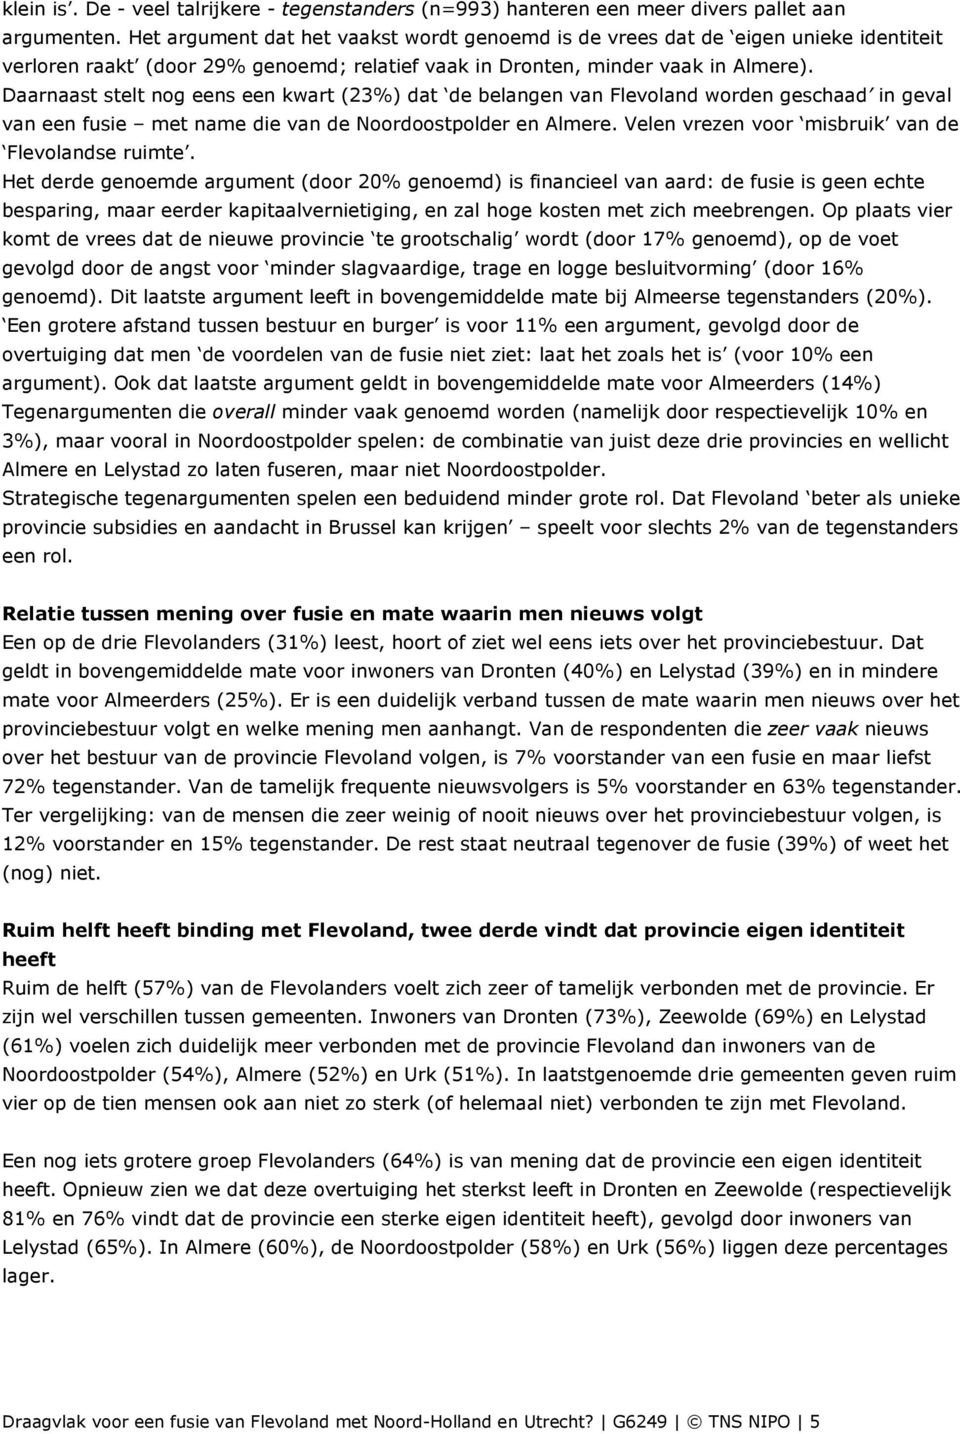 Daarnaast stelt nog eens een kwart (23%) dat de belangen van Flevoland worden geschaad in geval van een fusie met name die van de Noordoostpolder en Almere.